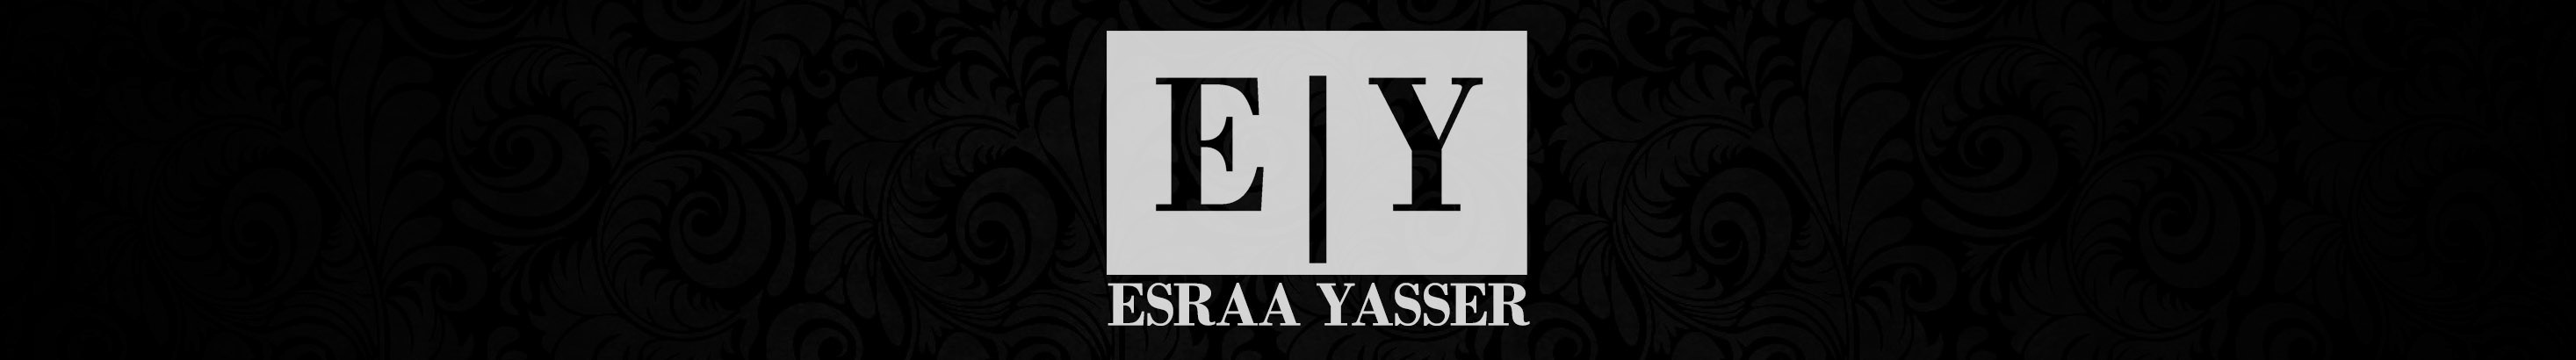 Esraa Yasser profil başlığı